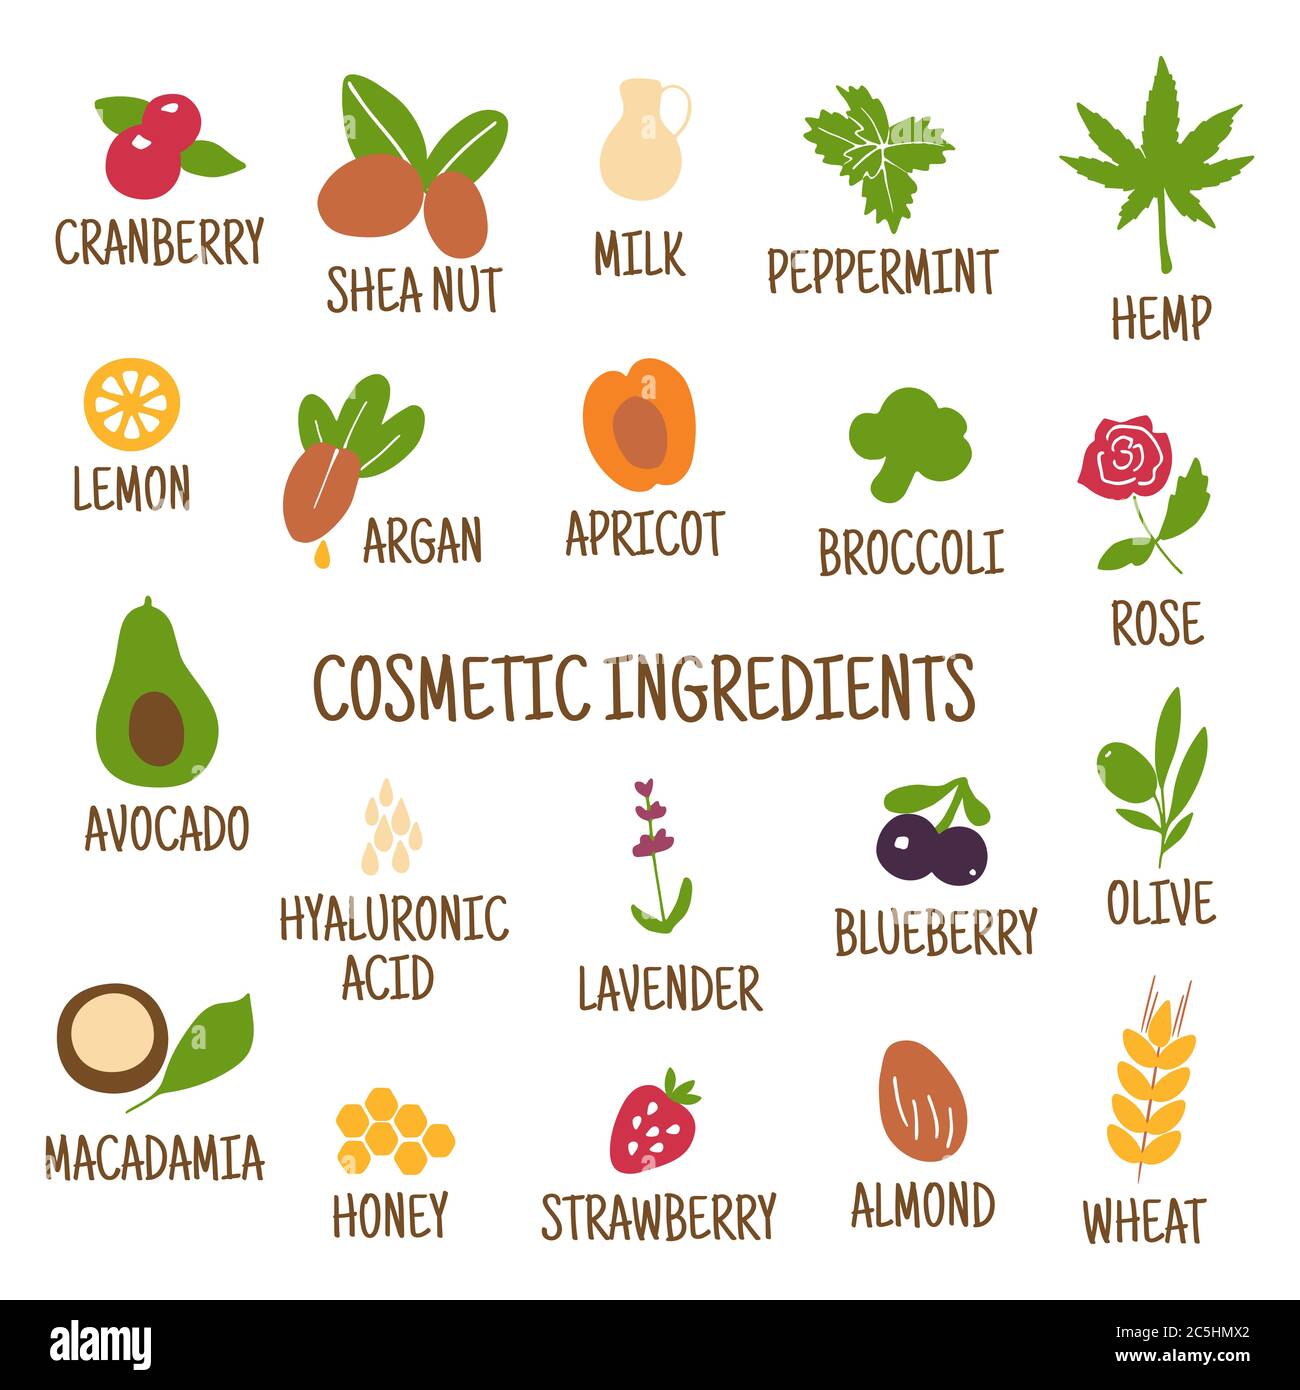 Kosmetische Inhaltsstoffe. Handgezeichnete Ikonen von Kräutern, Obst, Gemüse, Blumen, Ölen. Sammlung von Vektorsymbolen. Stock Vektor